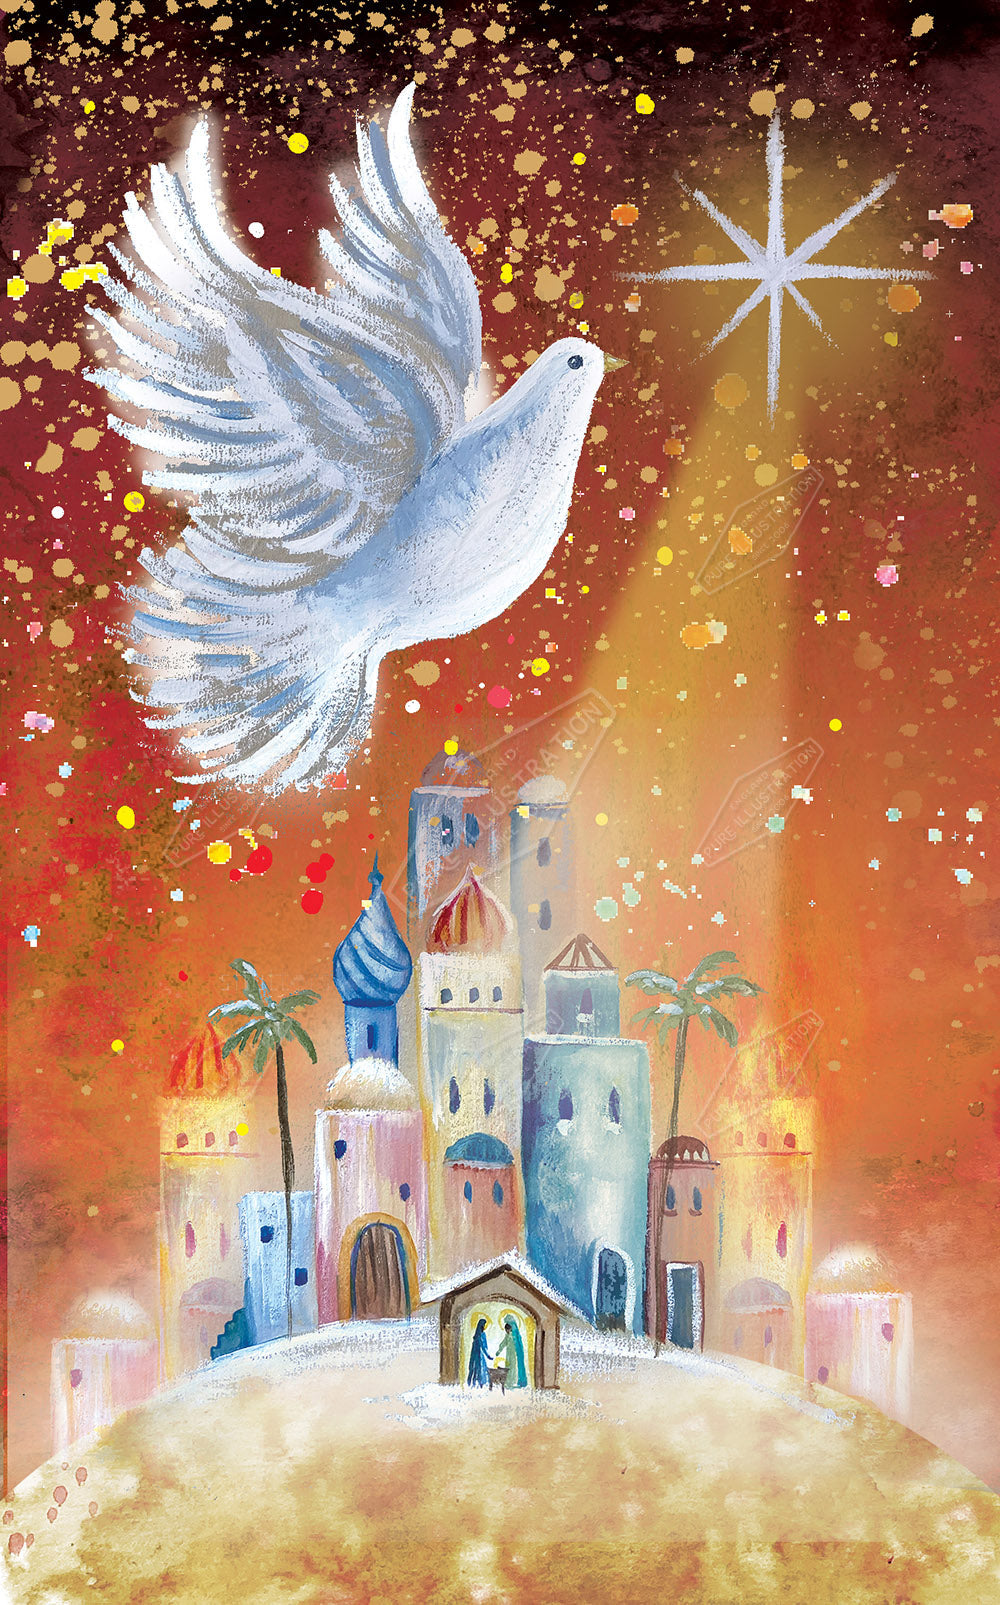 00034948DEV - Dove over Bethlehem by Deva Evans for Pure Art Licensing Agency